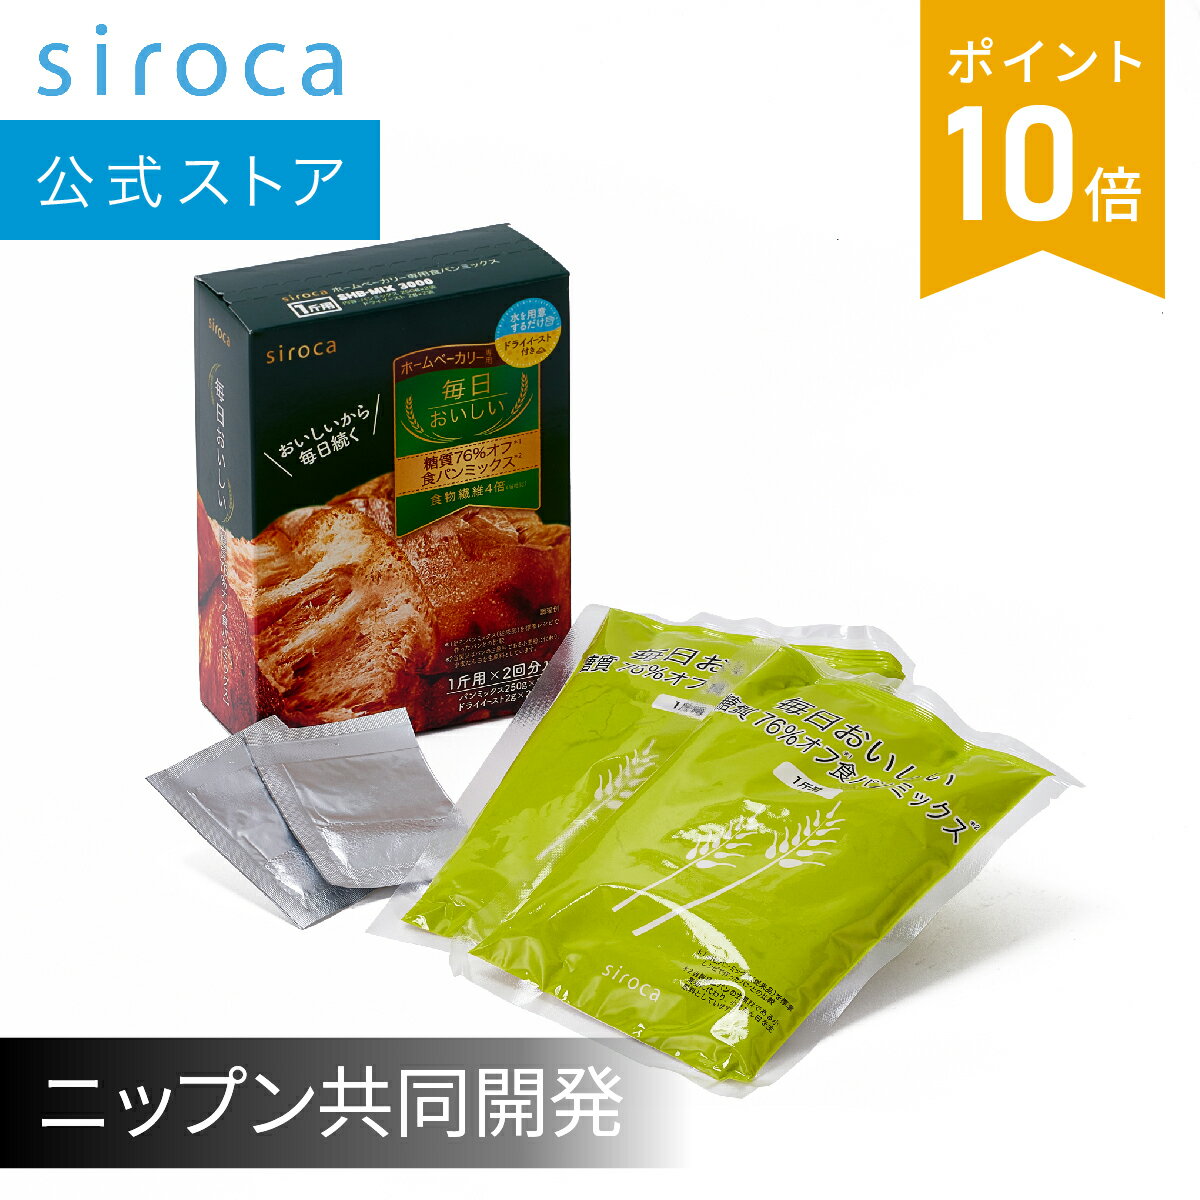 【シロカ公式】siroca 毎日おいしいパンミックス 糖質76%オフ食パンミックス SHB-MIX3000 | パンミックス粉 ミックス…